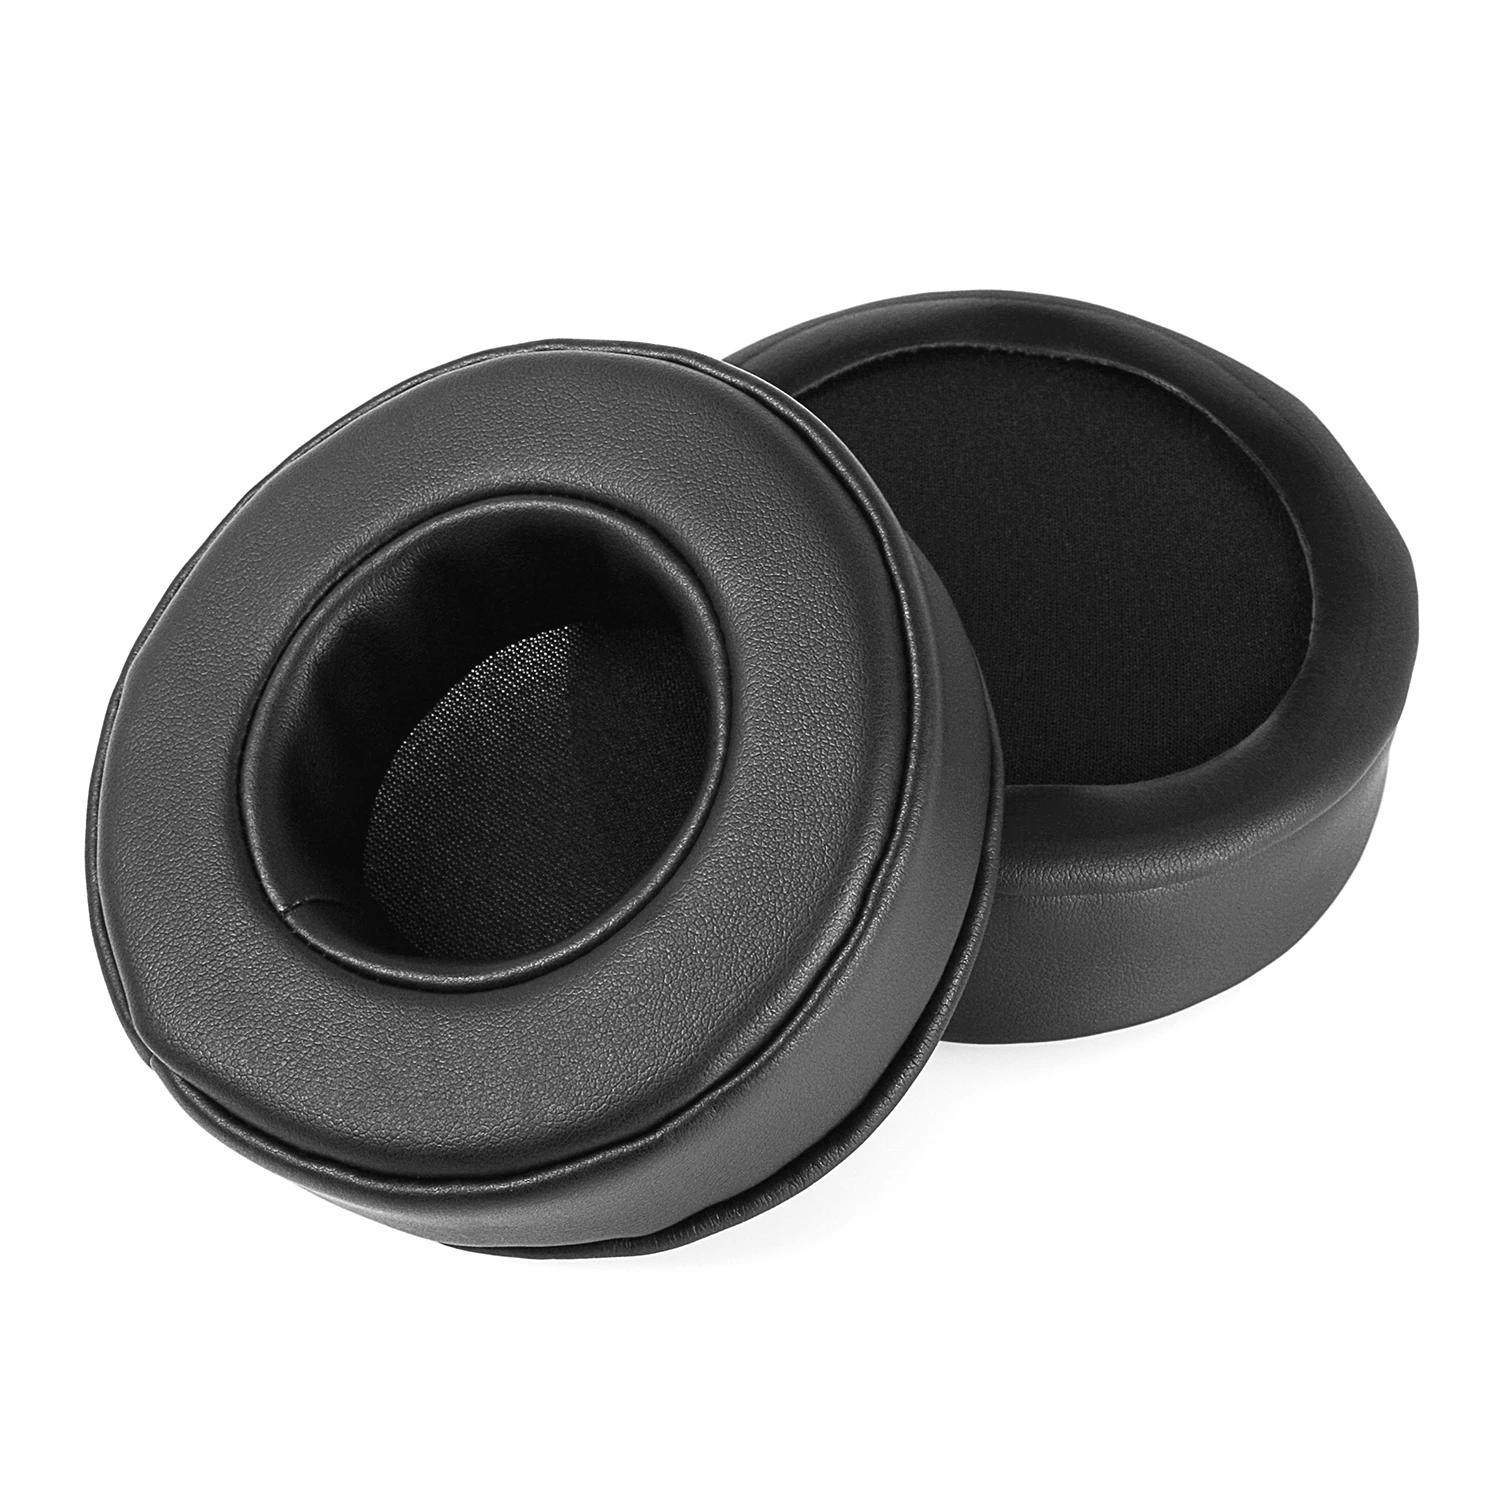 Yamaha color negro Almohadillas de repuesto para auriculares Yamaha HPH-MT7 Hph mt7 espuma viscoelástica